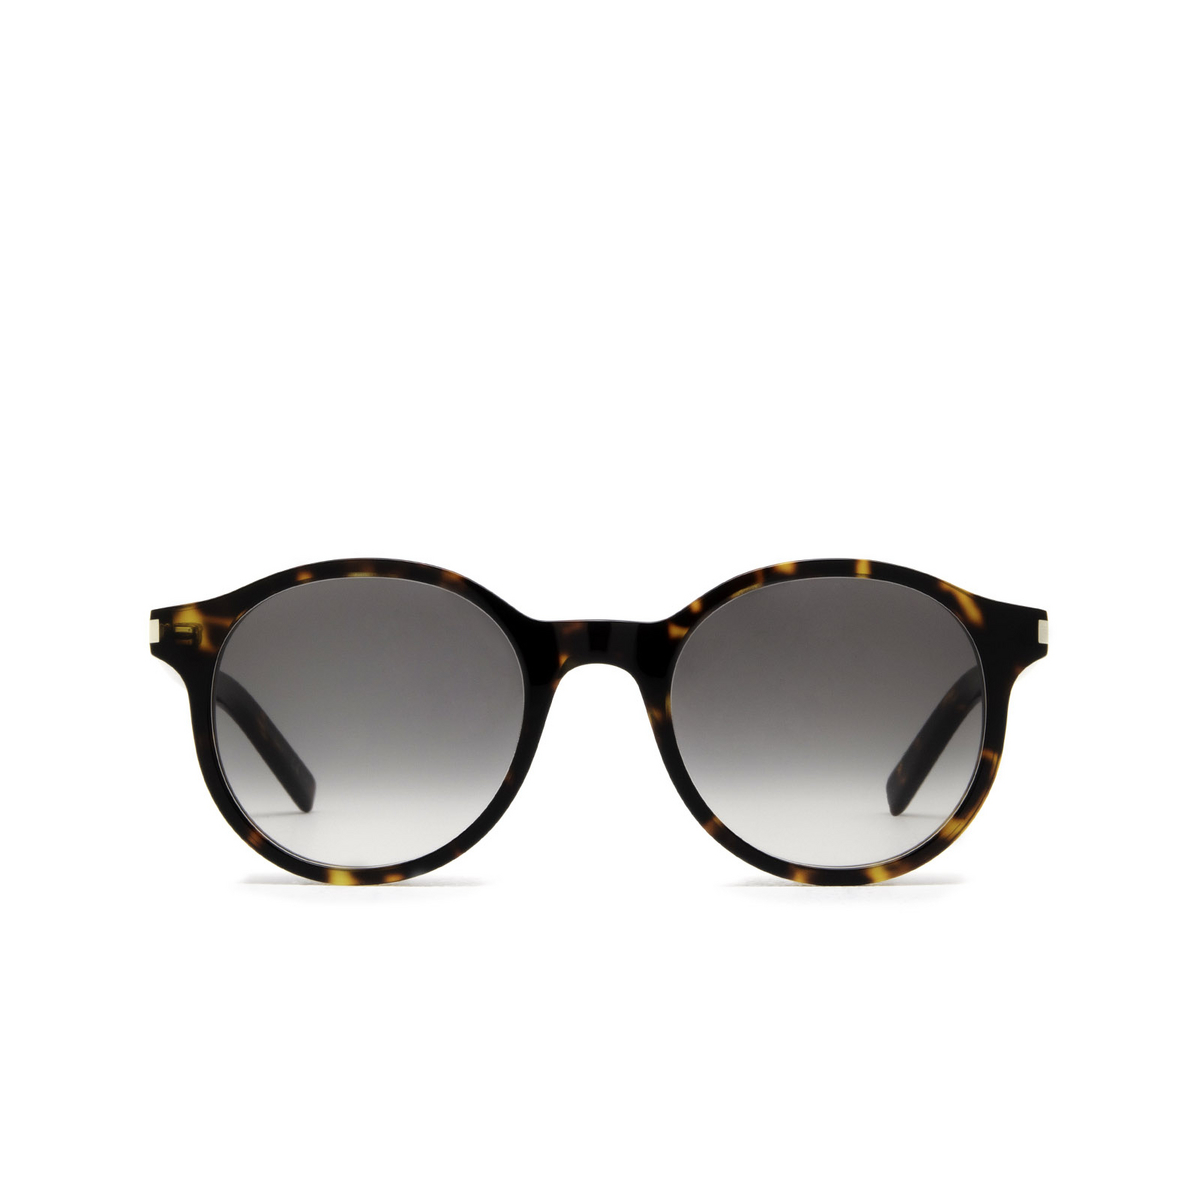 Saint Laurent® Round Sunglasses: SL 521 color Havana 004 - front view.